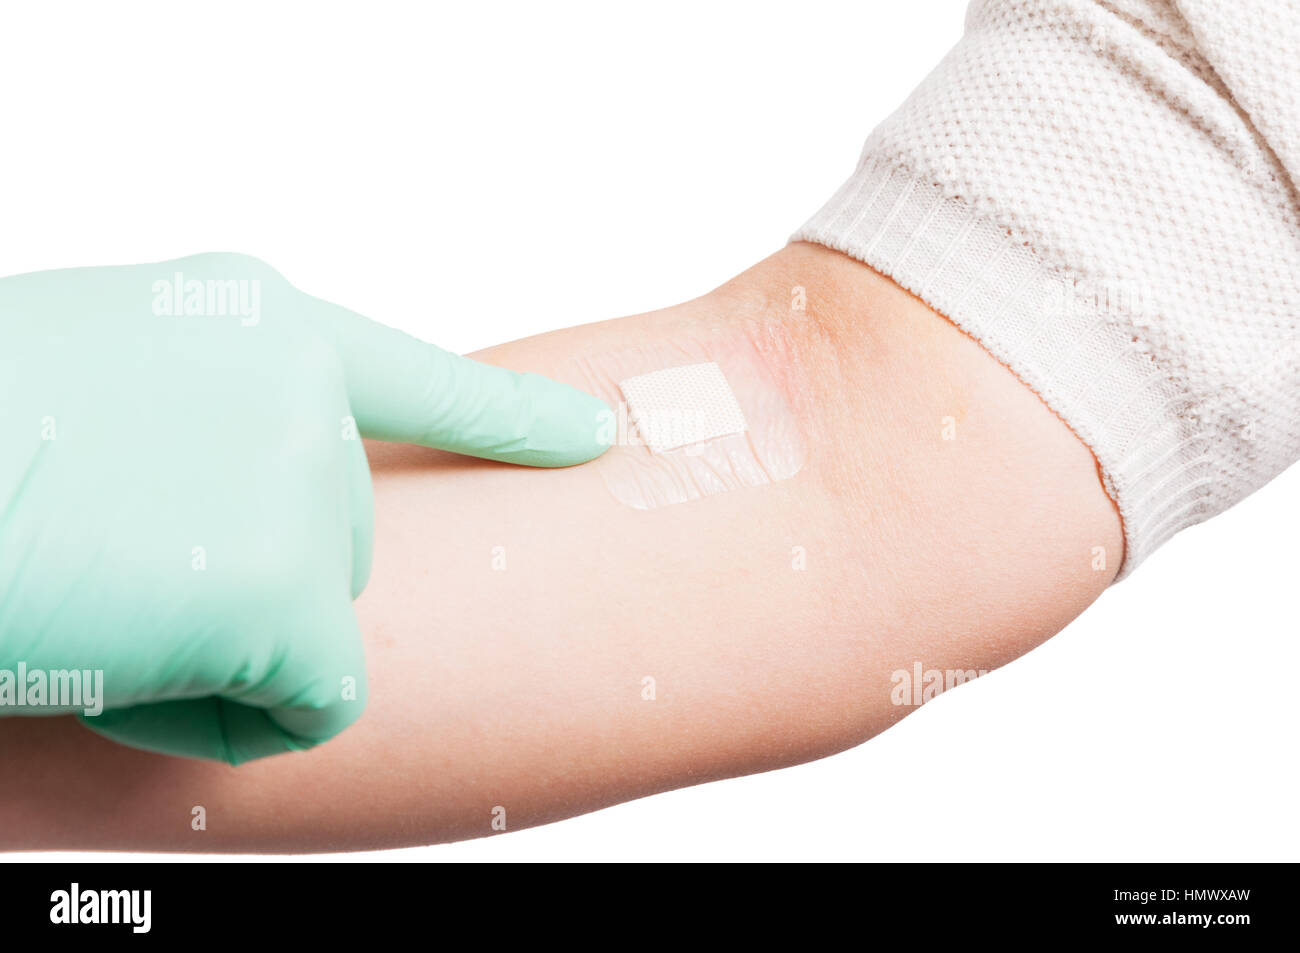 Weibliche Hand mit Patch auf Vene nach Blutspende in Nahaufnahme Blick und Krankenschwester Hand mit Handschuh Stockfoto